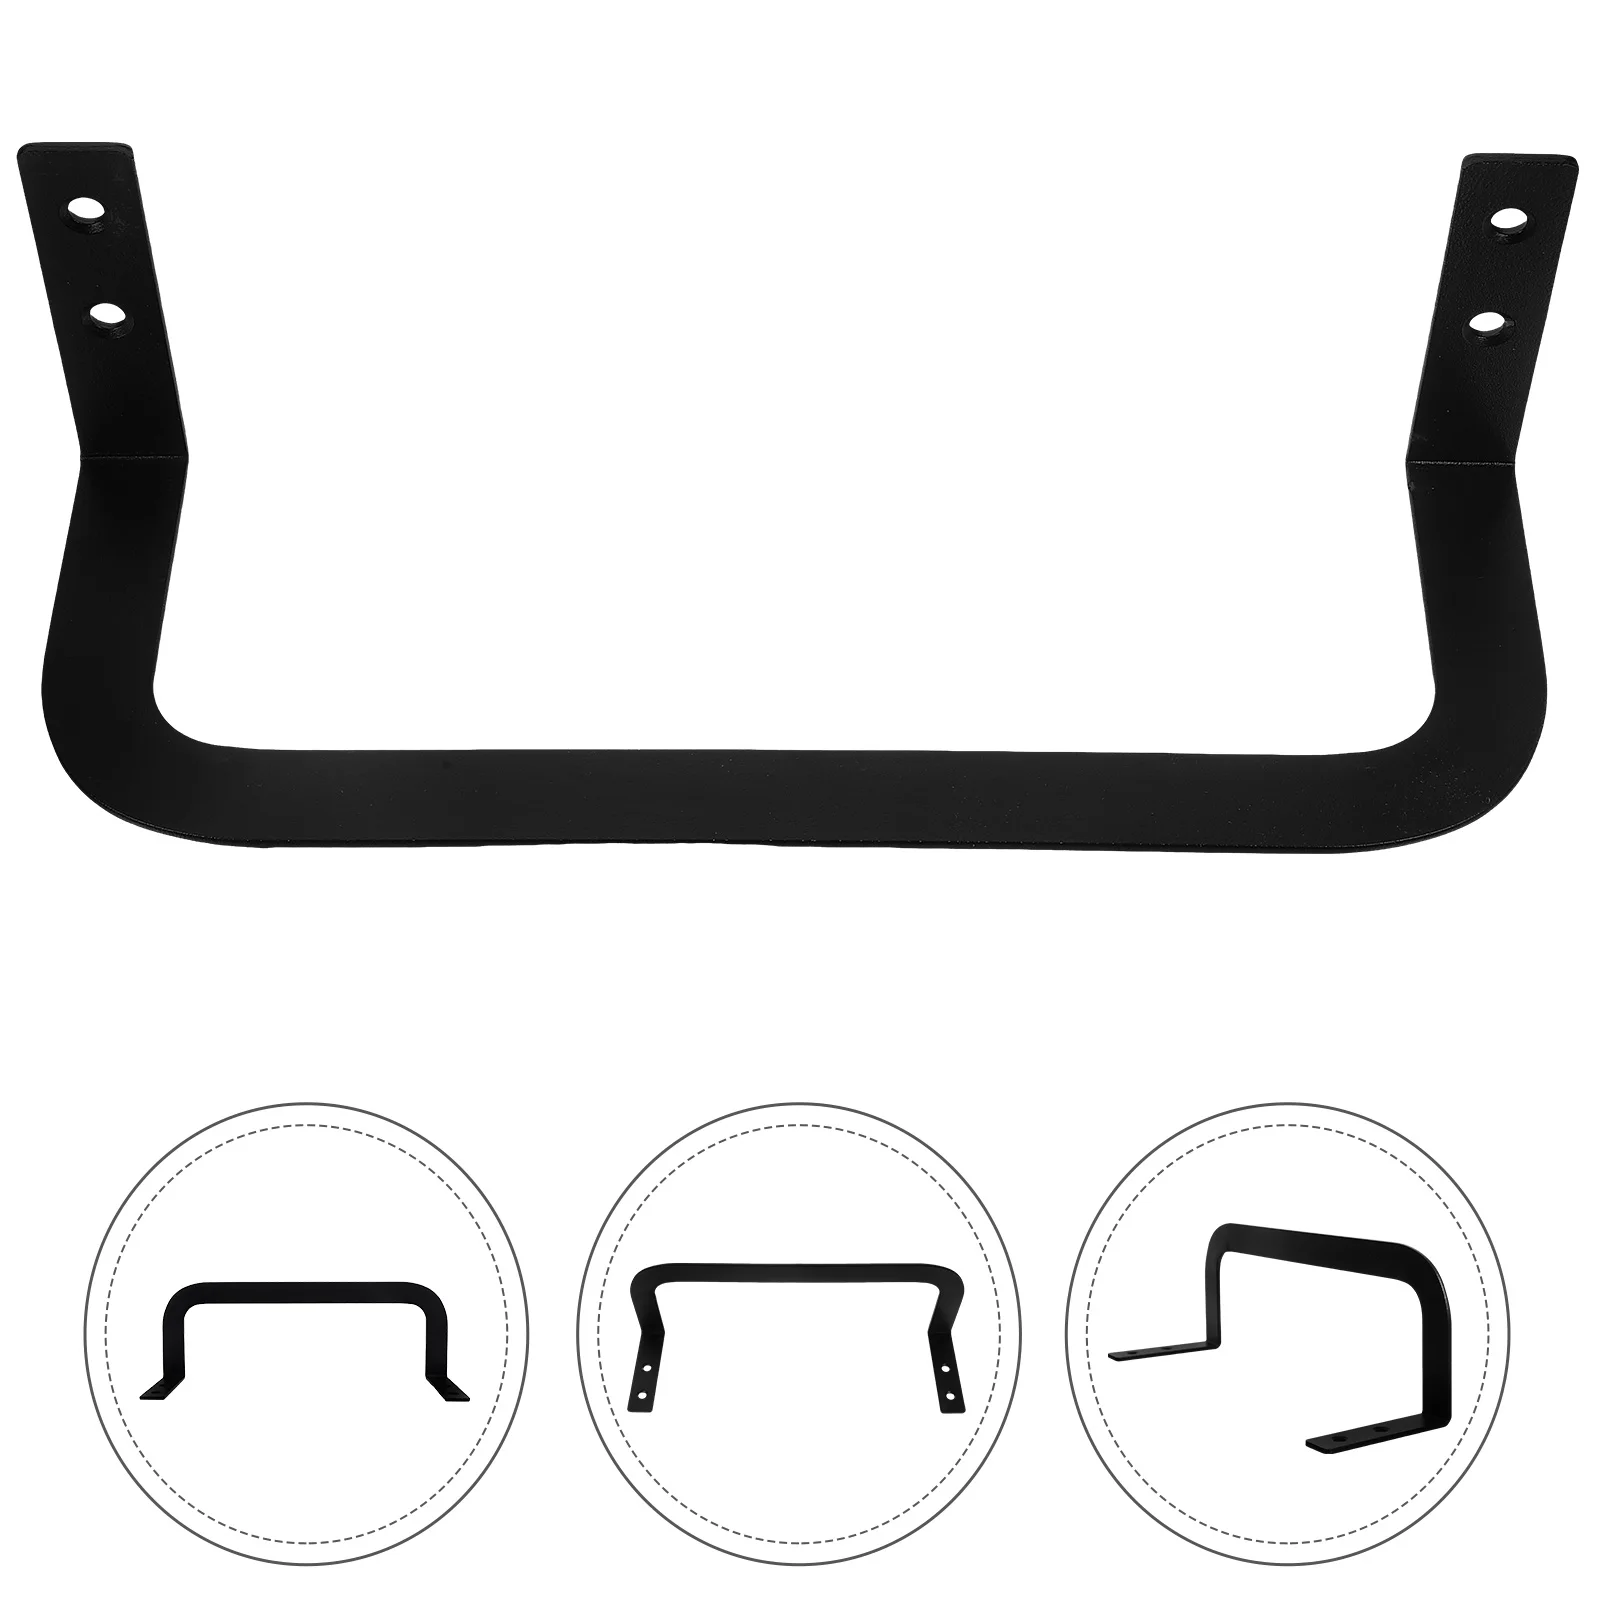 

2 Pcs Bed Shelf Mattress Holder Slide Stopper Retainer Bar Metal Racks Bedding Accessories Non-slip Stoppers